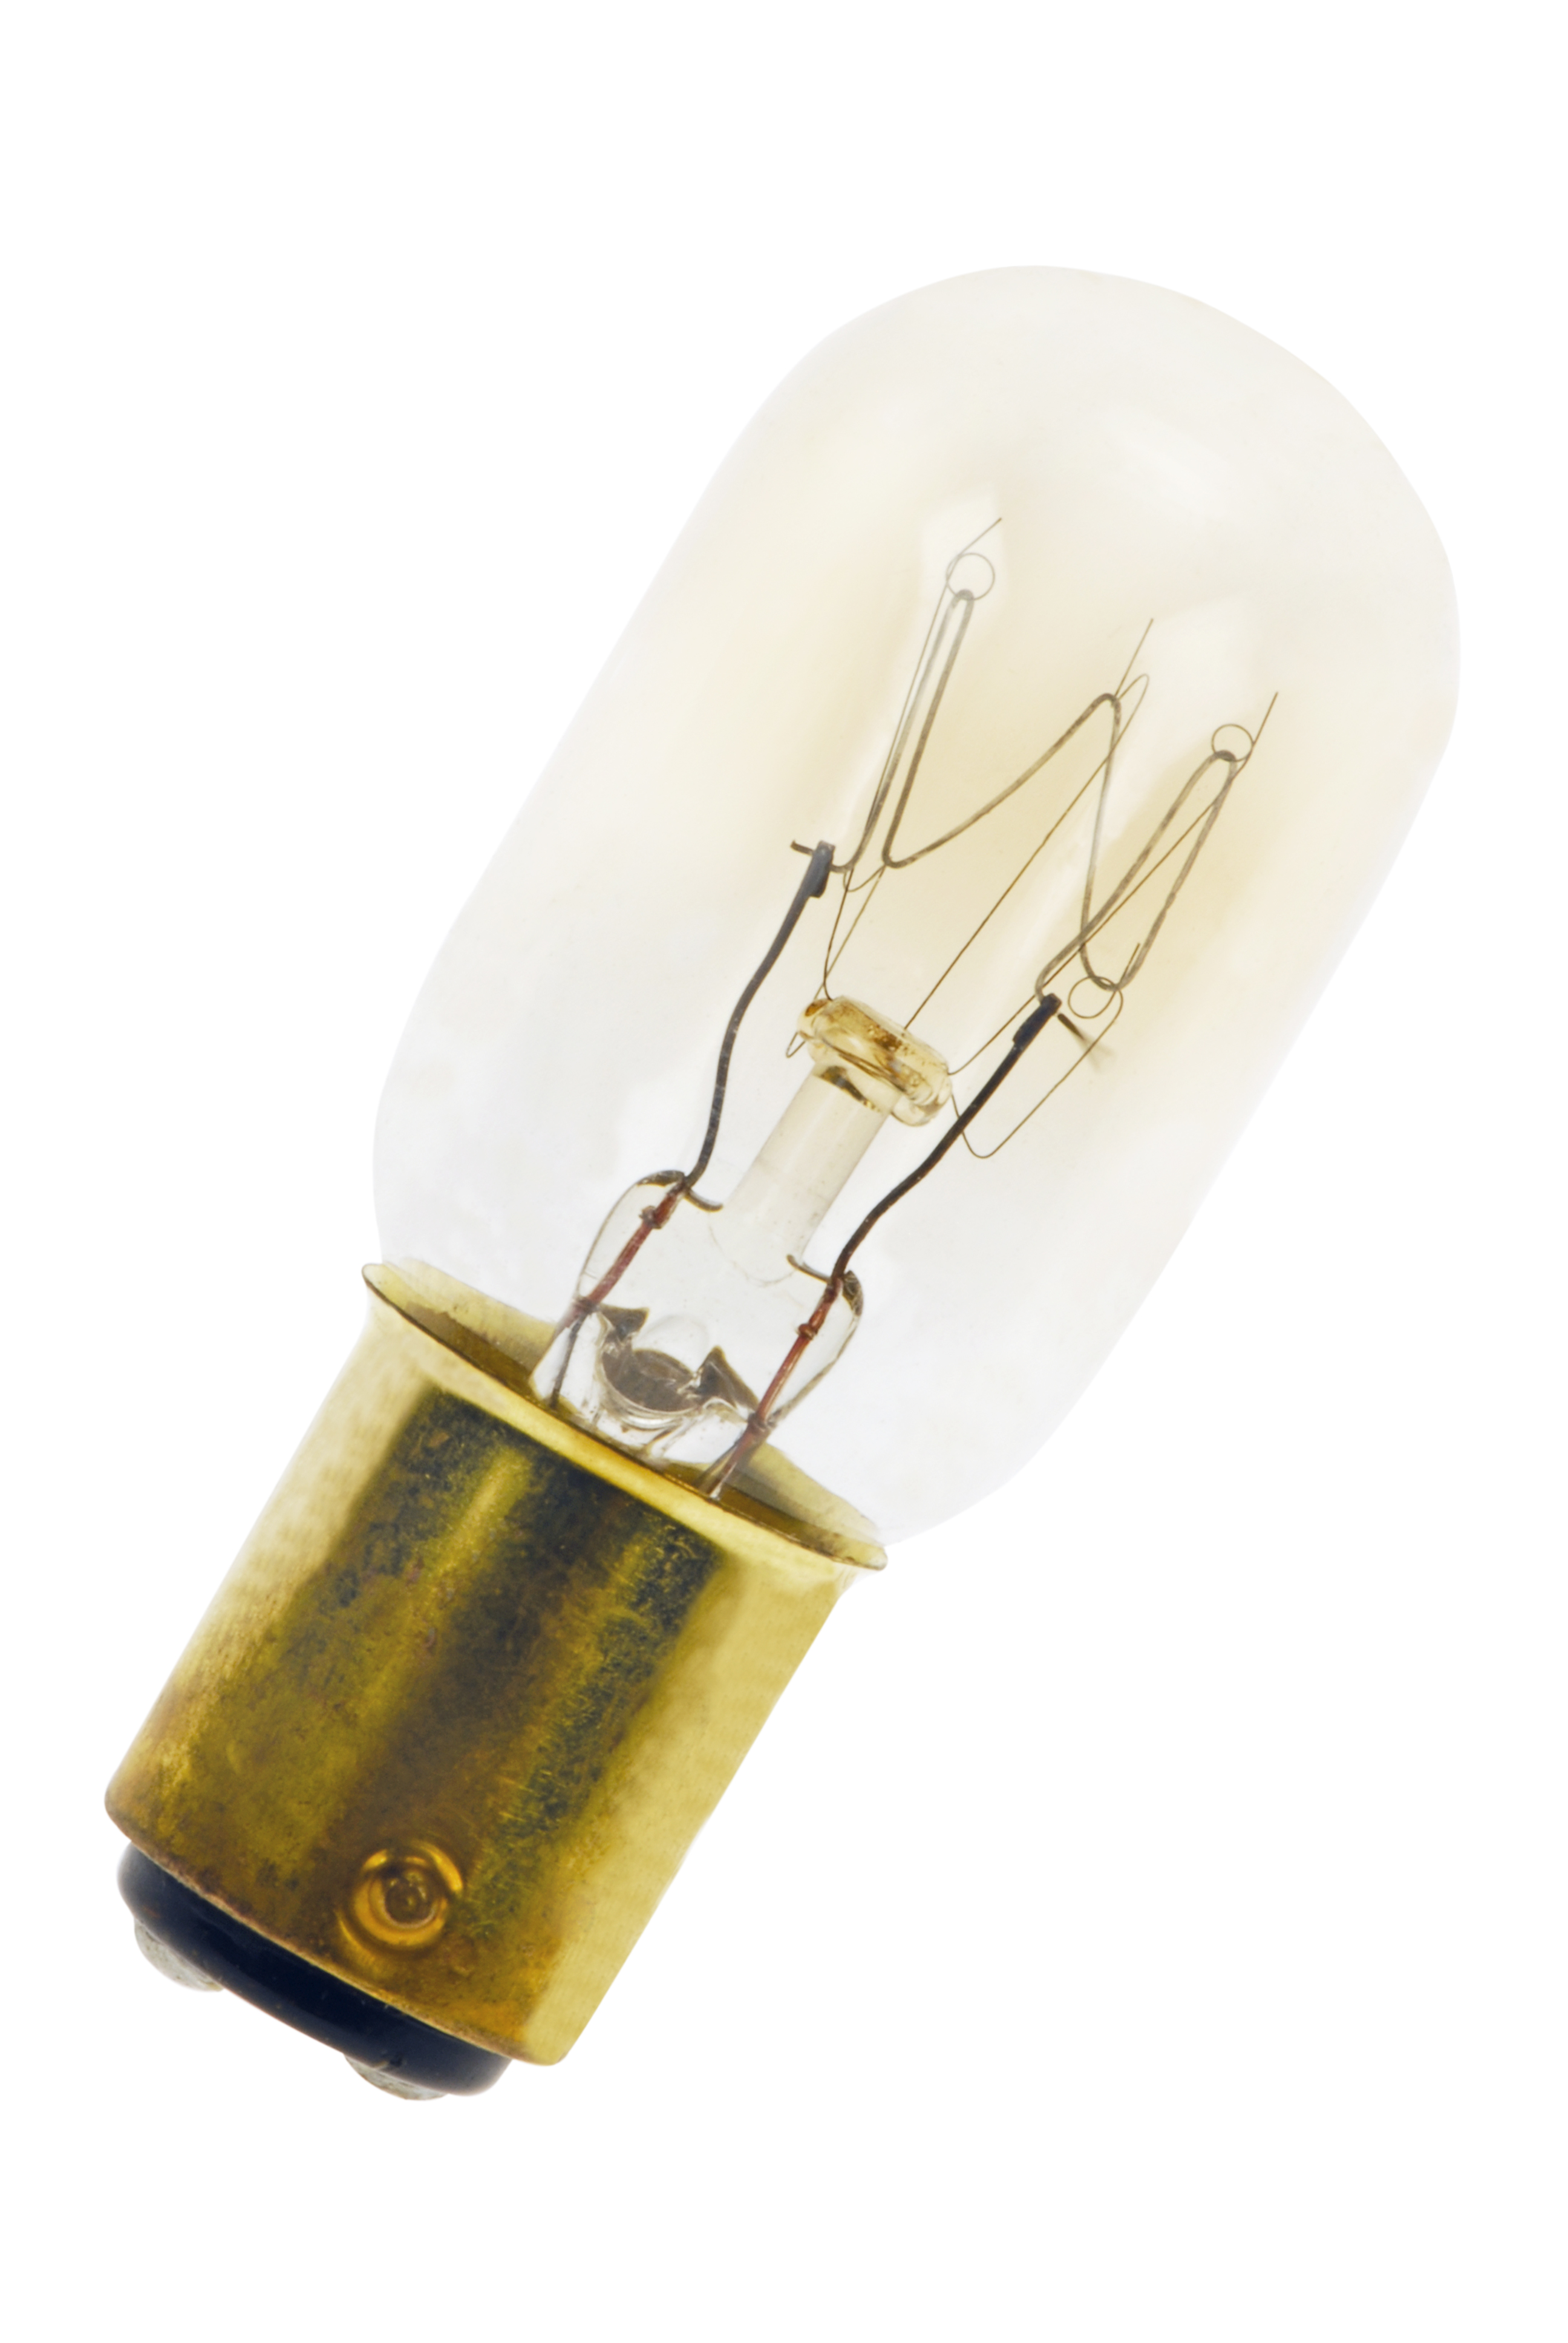 OSRAM Lampe spéciale four halogène G9 Special Oven T/Ampoule pour four 25  Watt/culot à broches/blanc chaud — 2700K 230v - Achat & prix